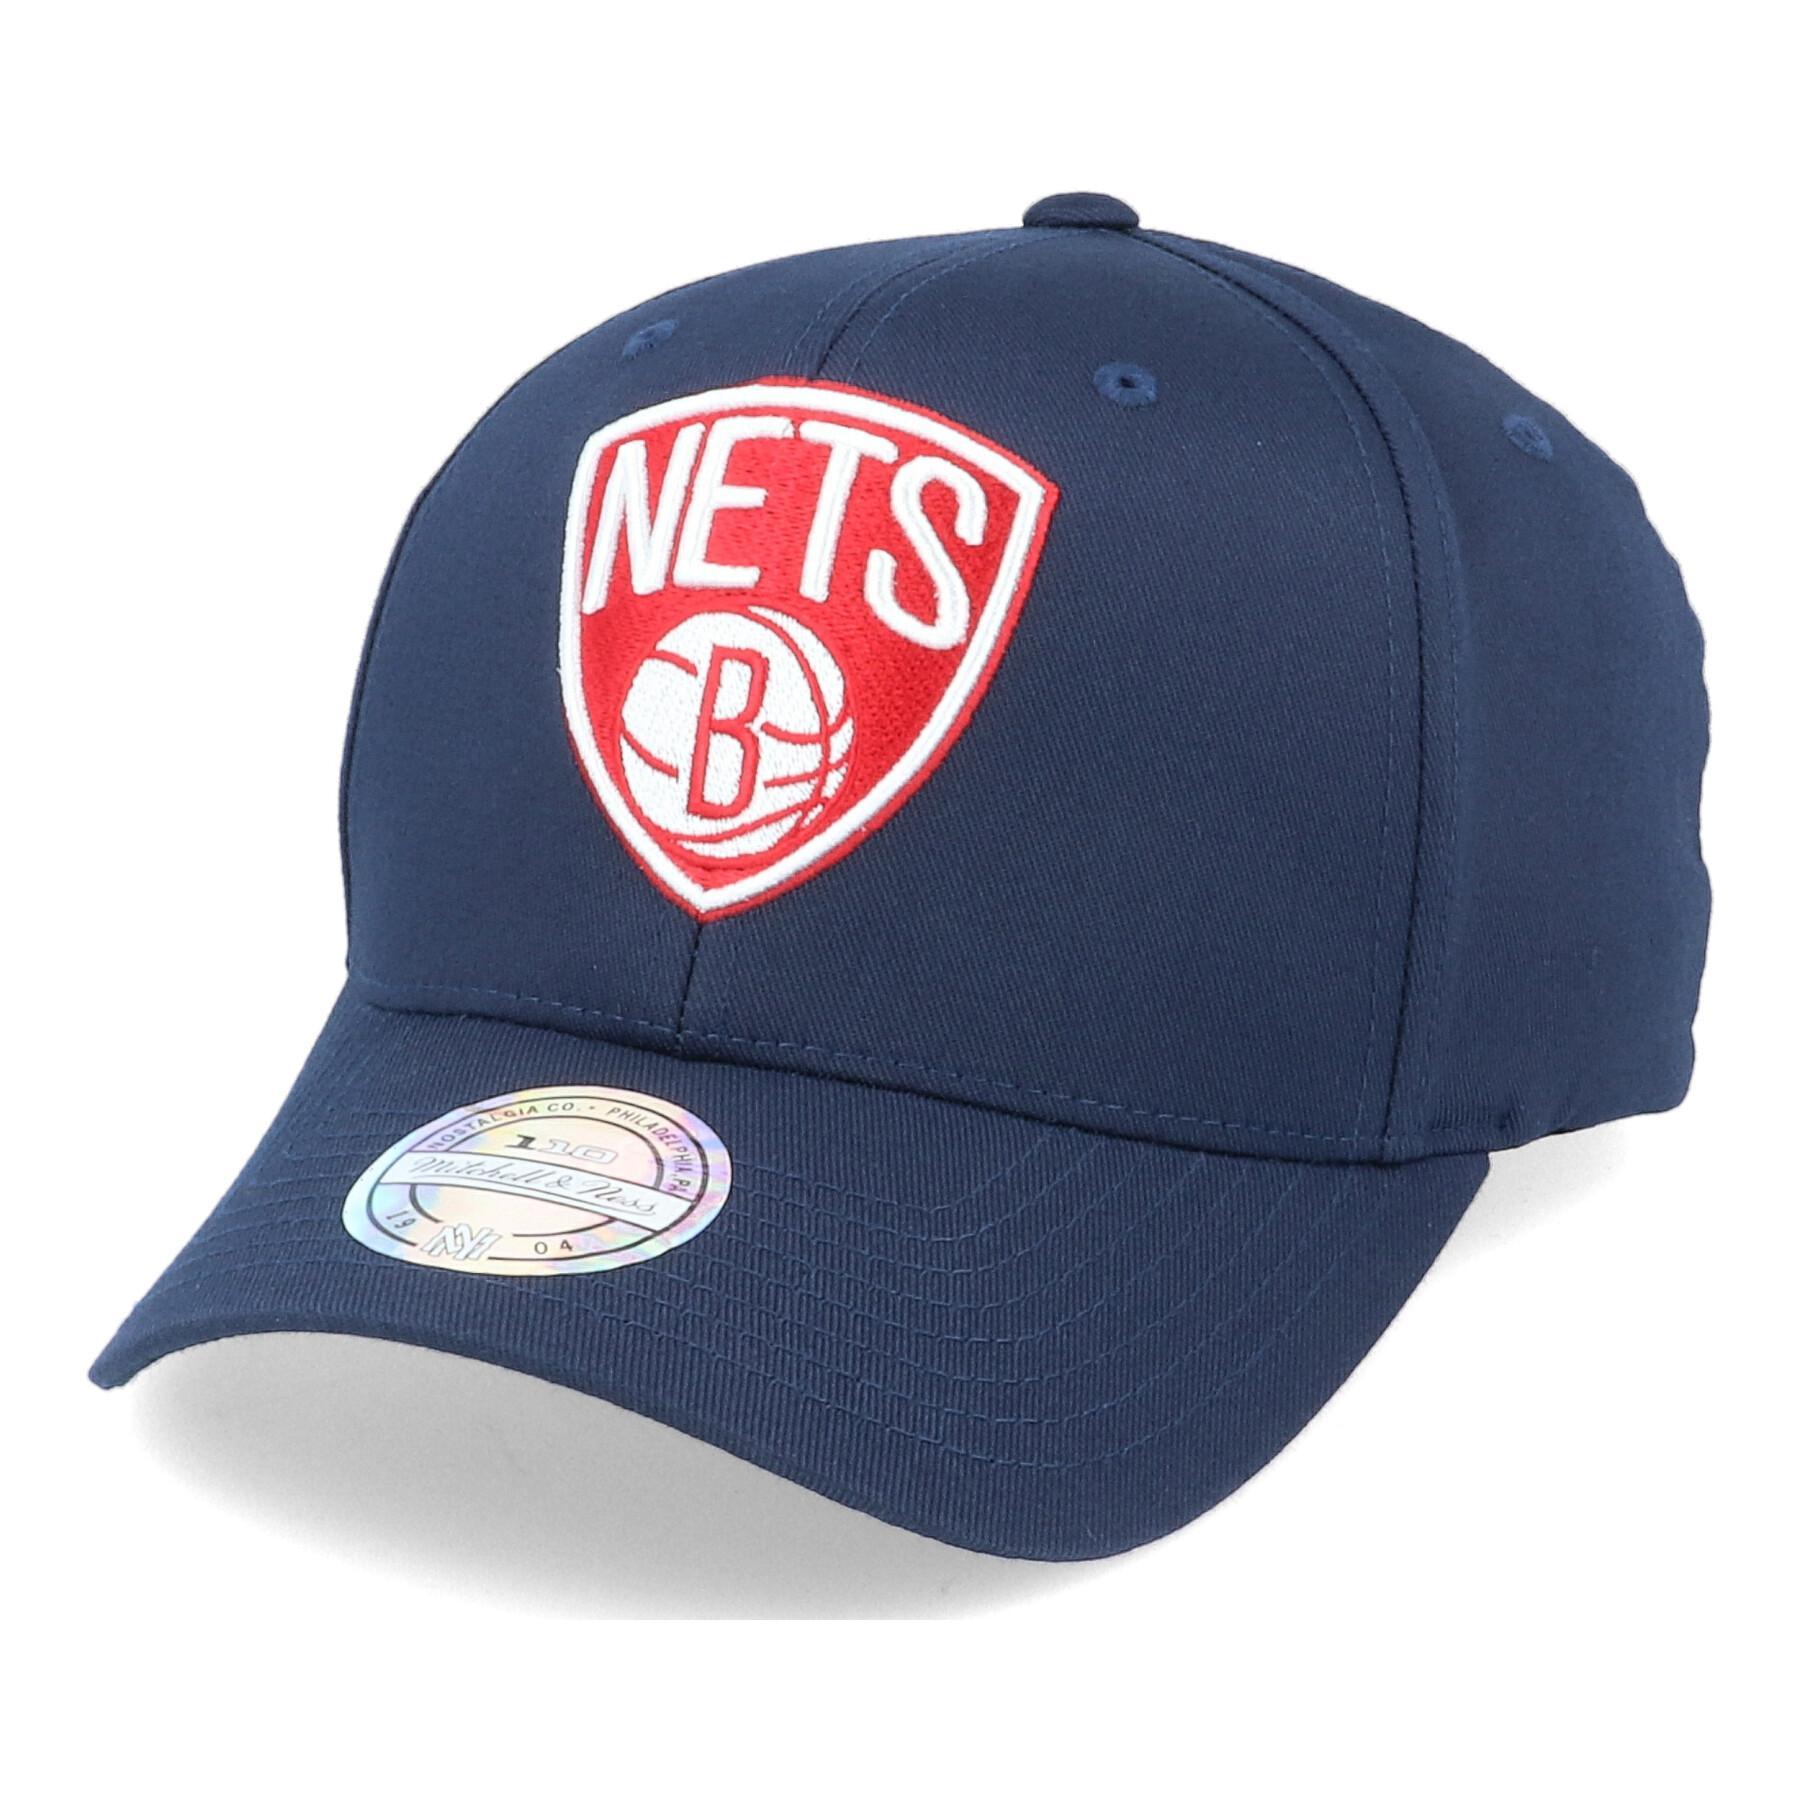 Boné Brooklyn Nets navy/red/white 110